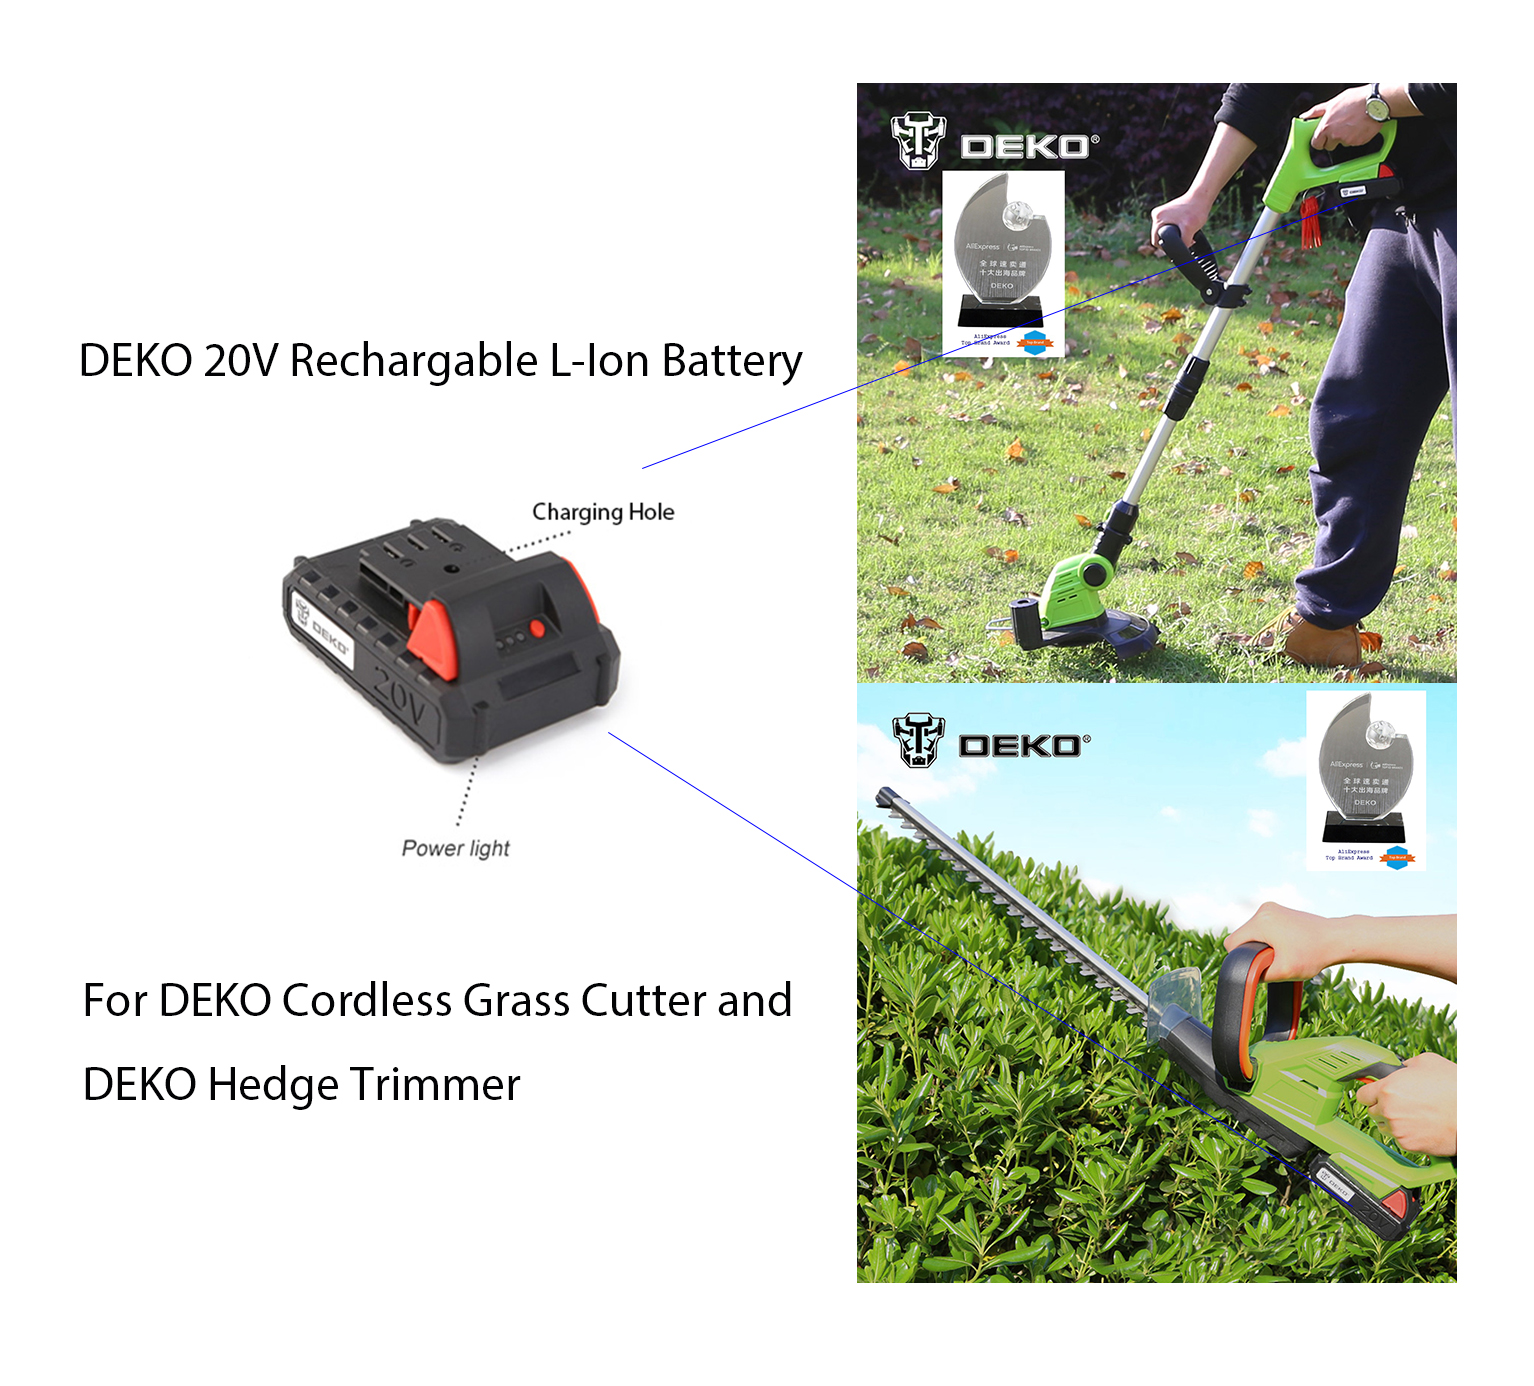 Deko 20V Rechargable Li-Ion Battery for Deko Grass Cutter and Hegde Trimmer แบตเตอรี่ลิเธียม-ไอออน 20V